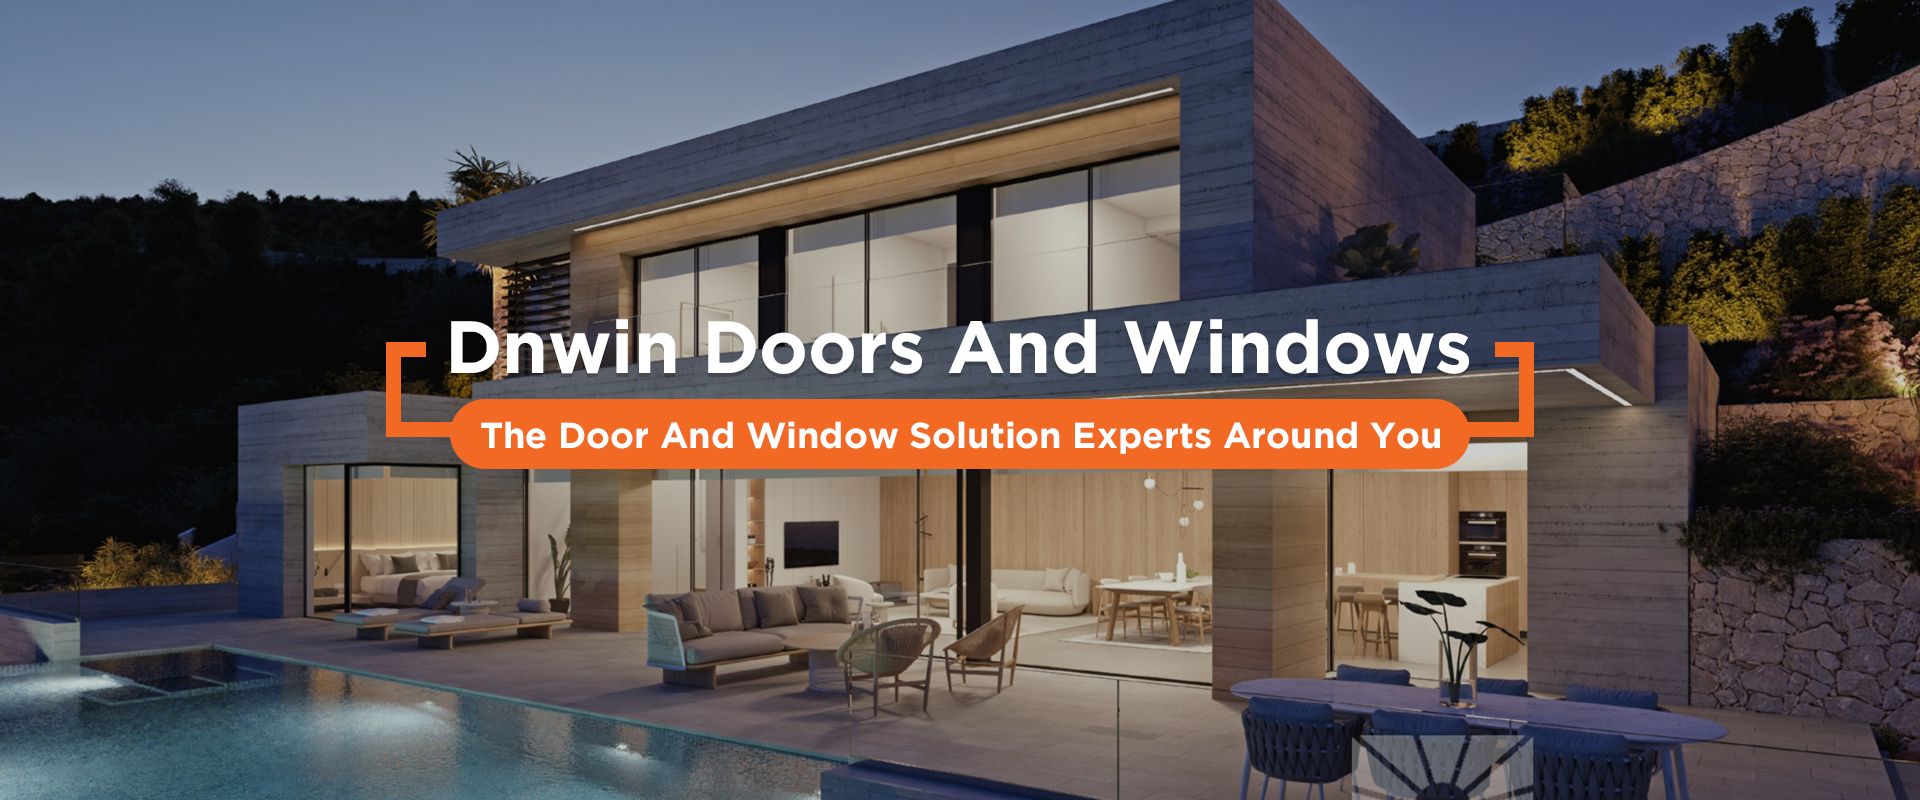 Dnwin Doors and Windows